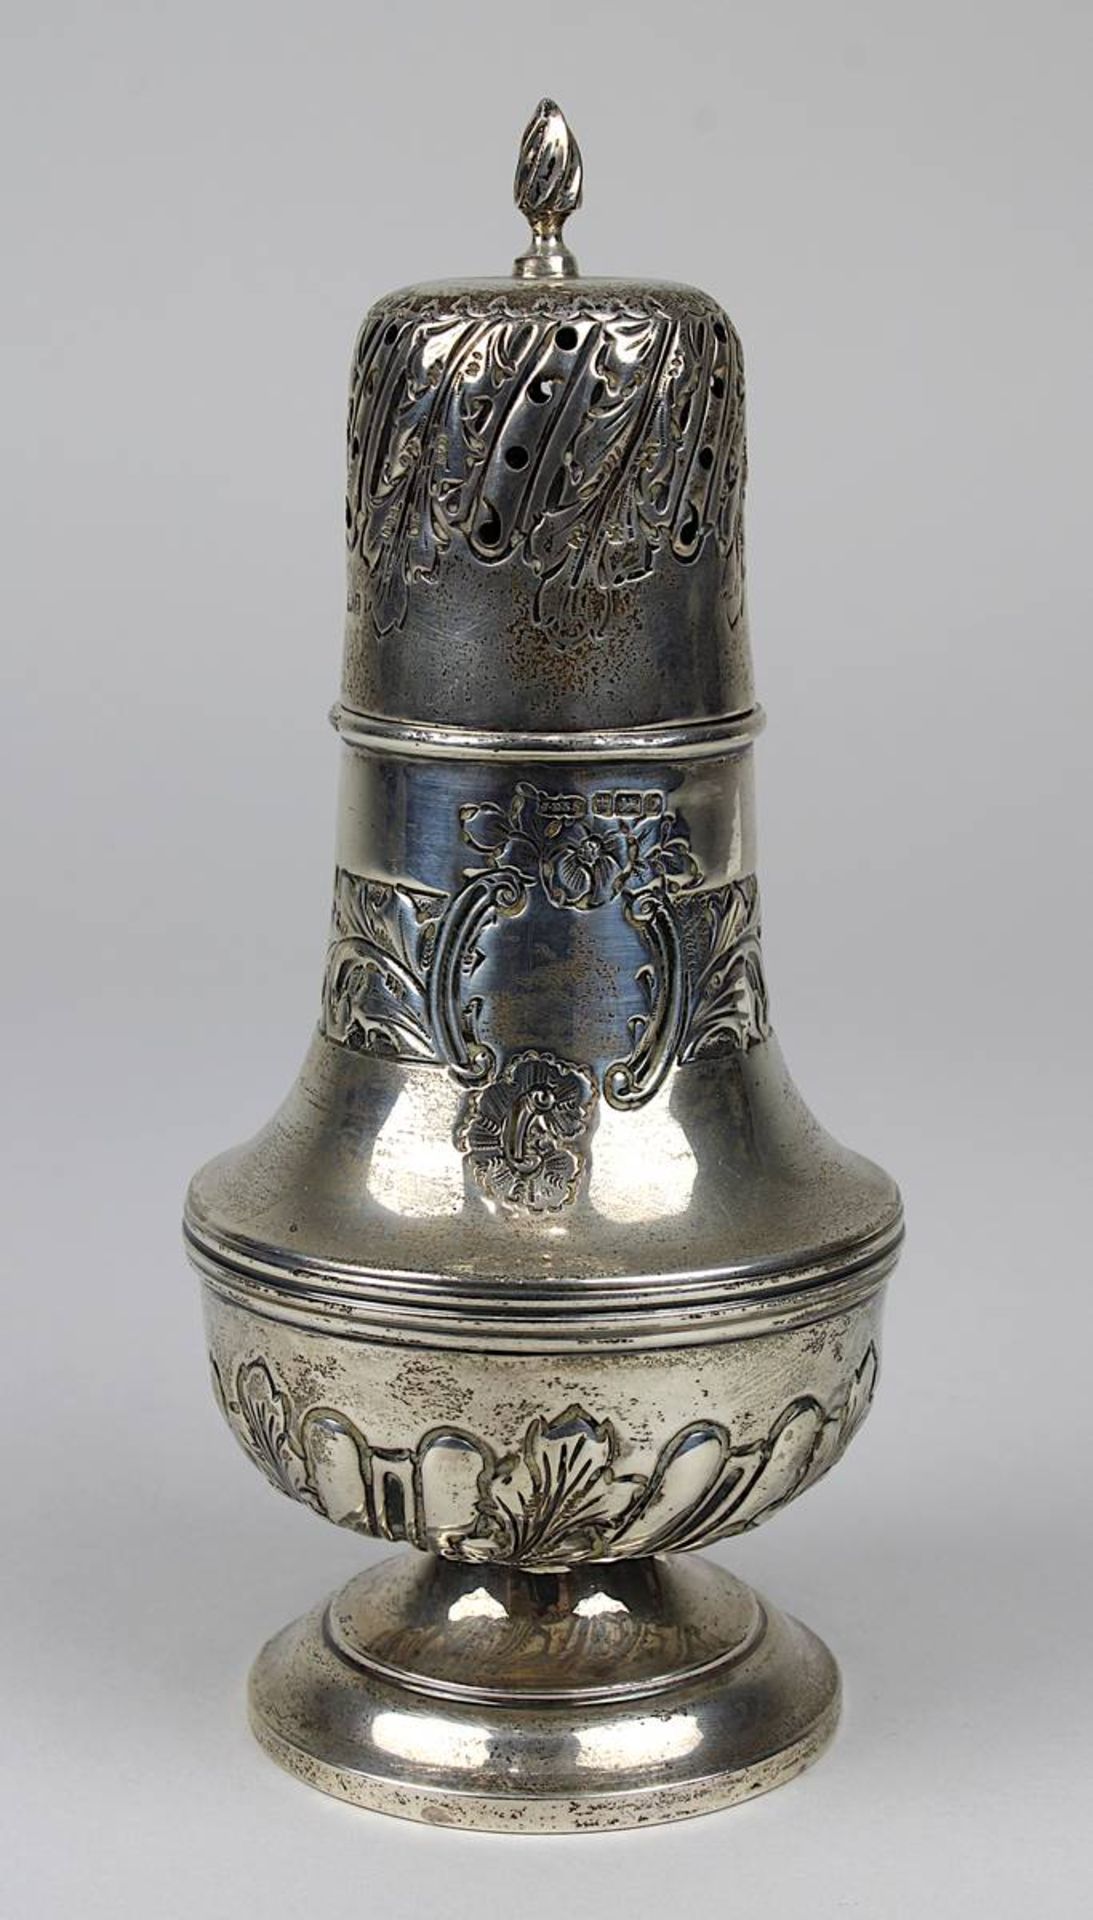 Zuckerstreuer aus Silber, Shefflied 1882, barocke Form, Wandung mit reliefiertem floralem Dekor und